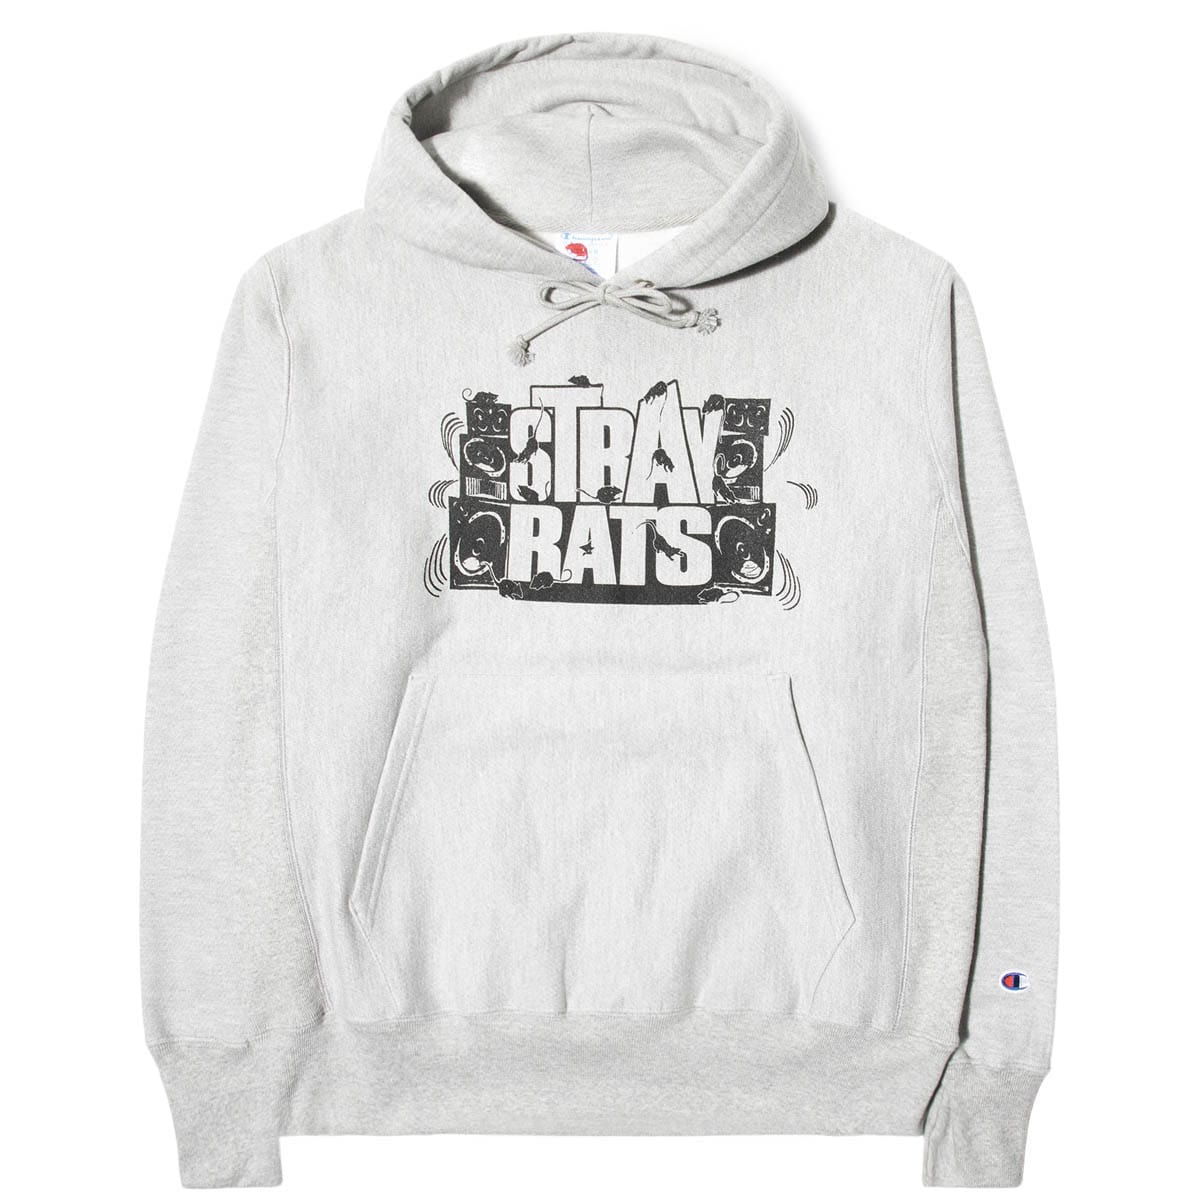 Stray Rats Hoodies & Sweatshirts JUNGLE HOODED SWEATSHIRT